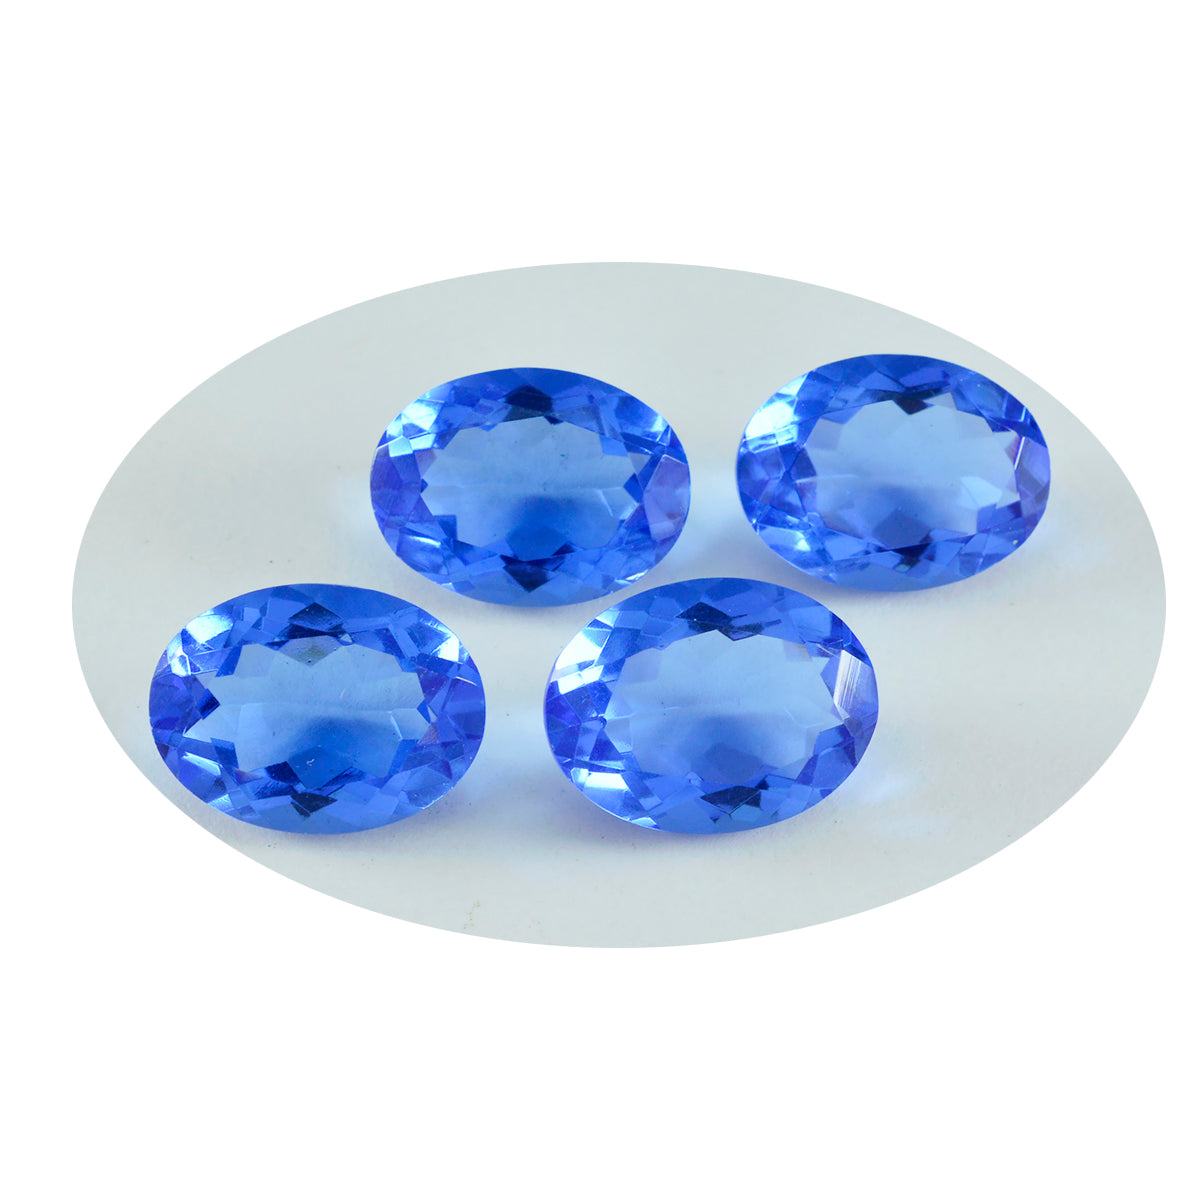 Riyogems 1 Stück blauer Saphir, CZ, facettiert, 10 x 14 mm, ovale Form, attraktive, hochwertige lose Edelsteine